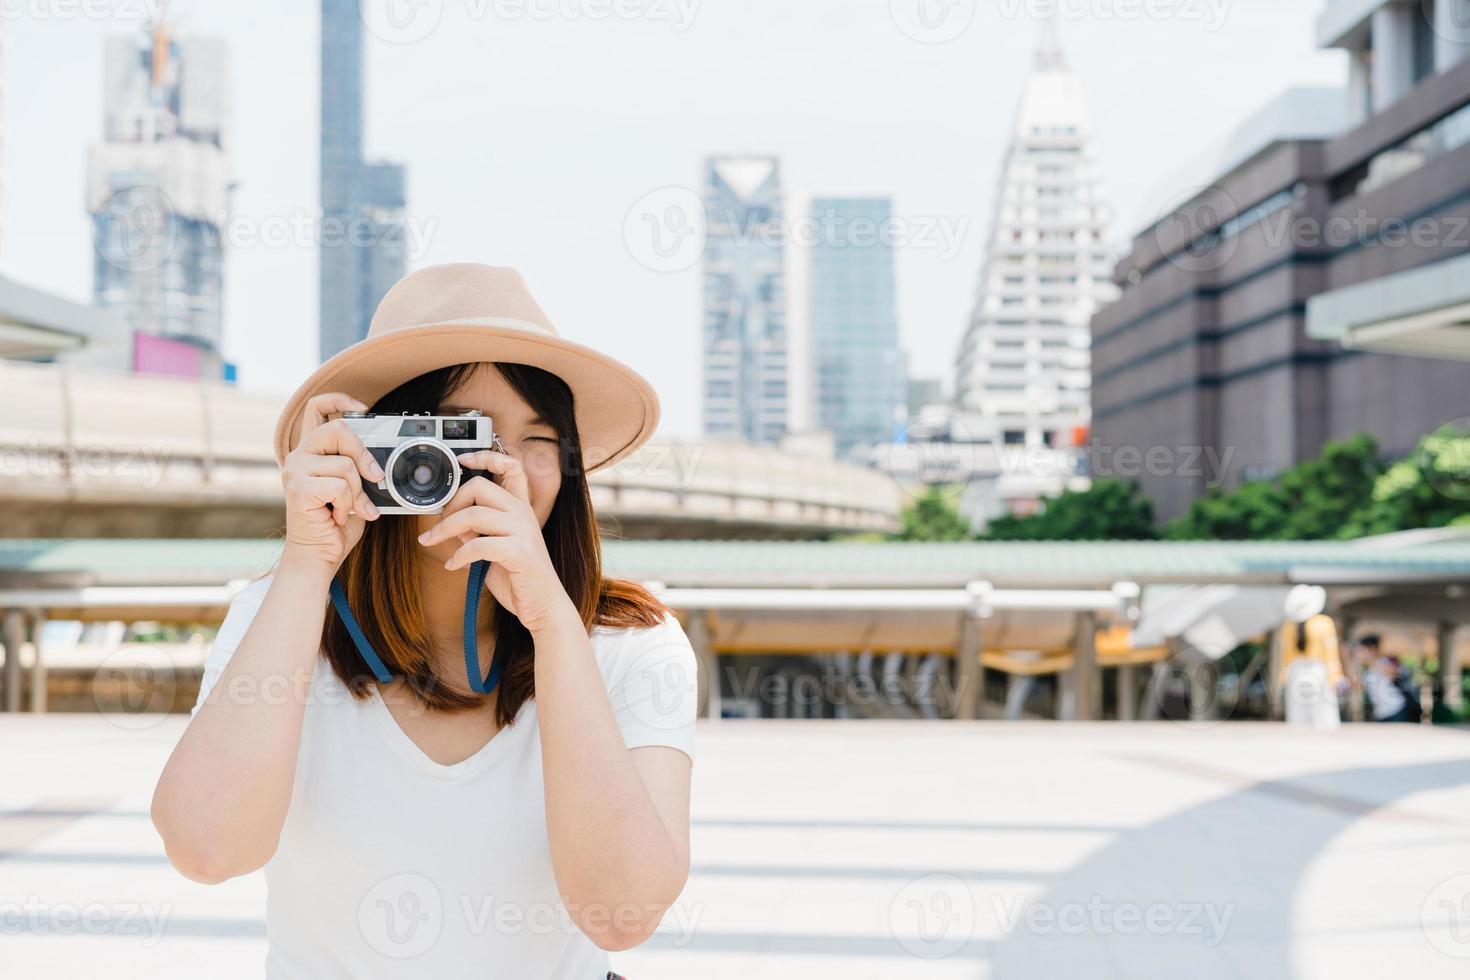 heureuse belle voyageuse femme asiatique porter sac à dos. jeunes femmes asiatiques joyeuses utilisant un appareil photo pour faire des photos pendant la visite de la ville, émotions joyeuses, bonne humeur. mode de vie des femmes en plein air dans le concept de la ville.